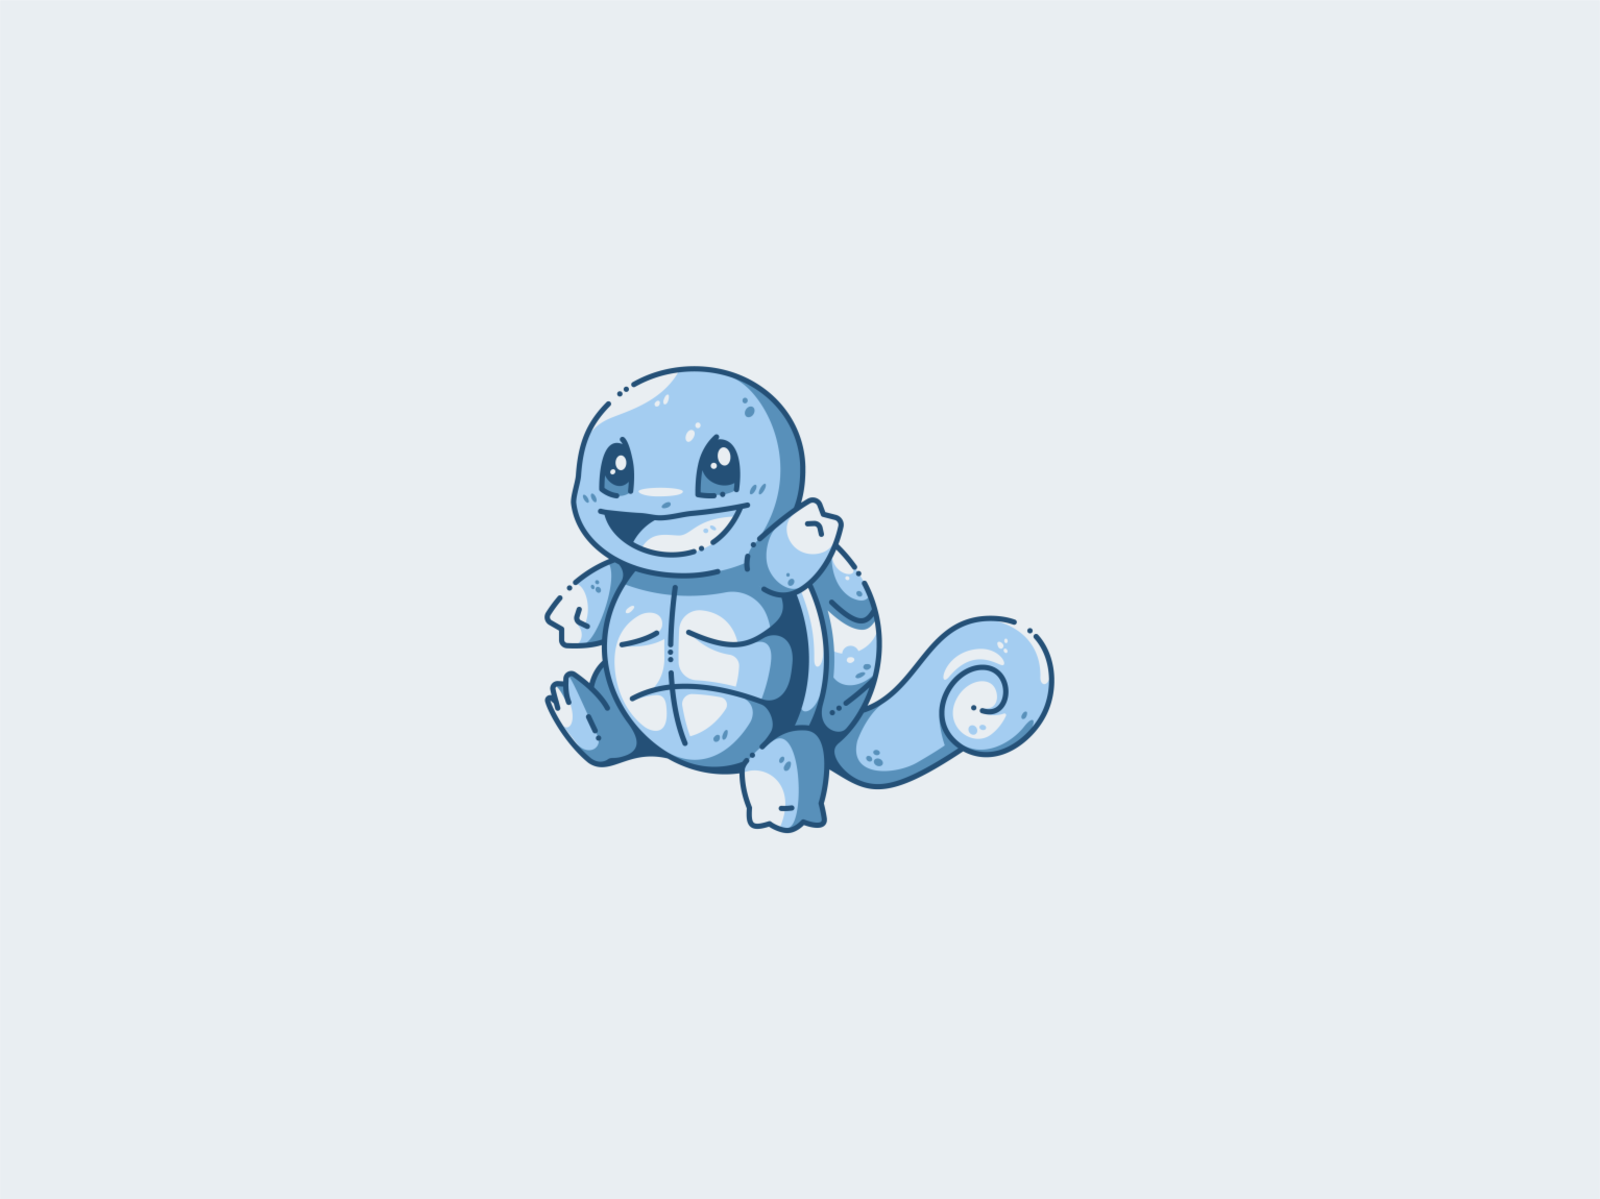 Cute Pokemon HD Wallpaper  PixelsTalkNet